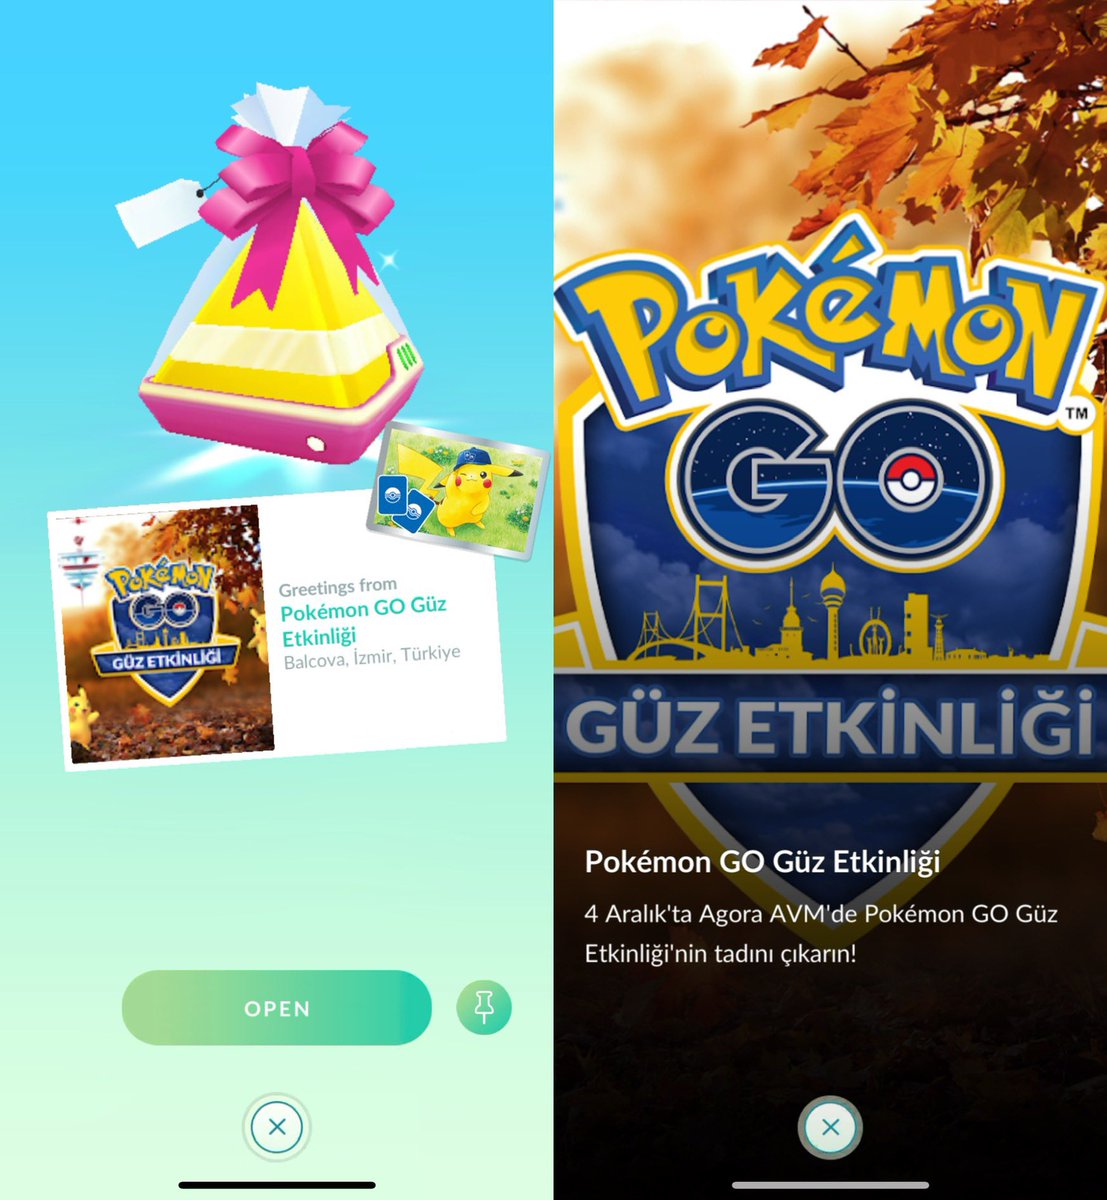 'Pokémon GO Güz Etkinliği'

Balcova, İzmir, Türkiye🇹🇷
#PokemonGOGift
#PokemonGO